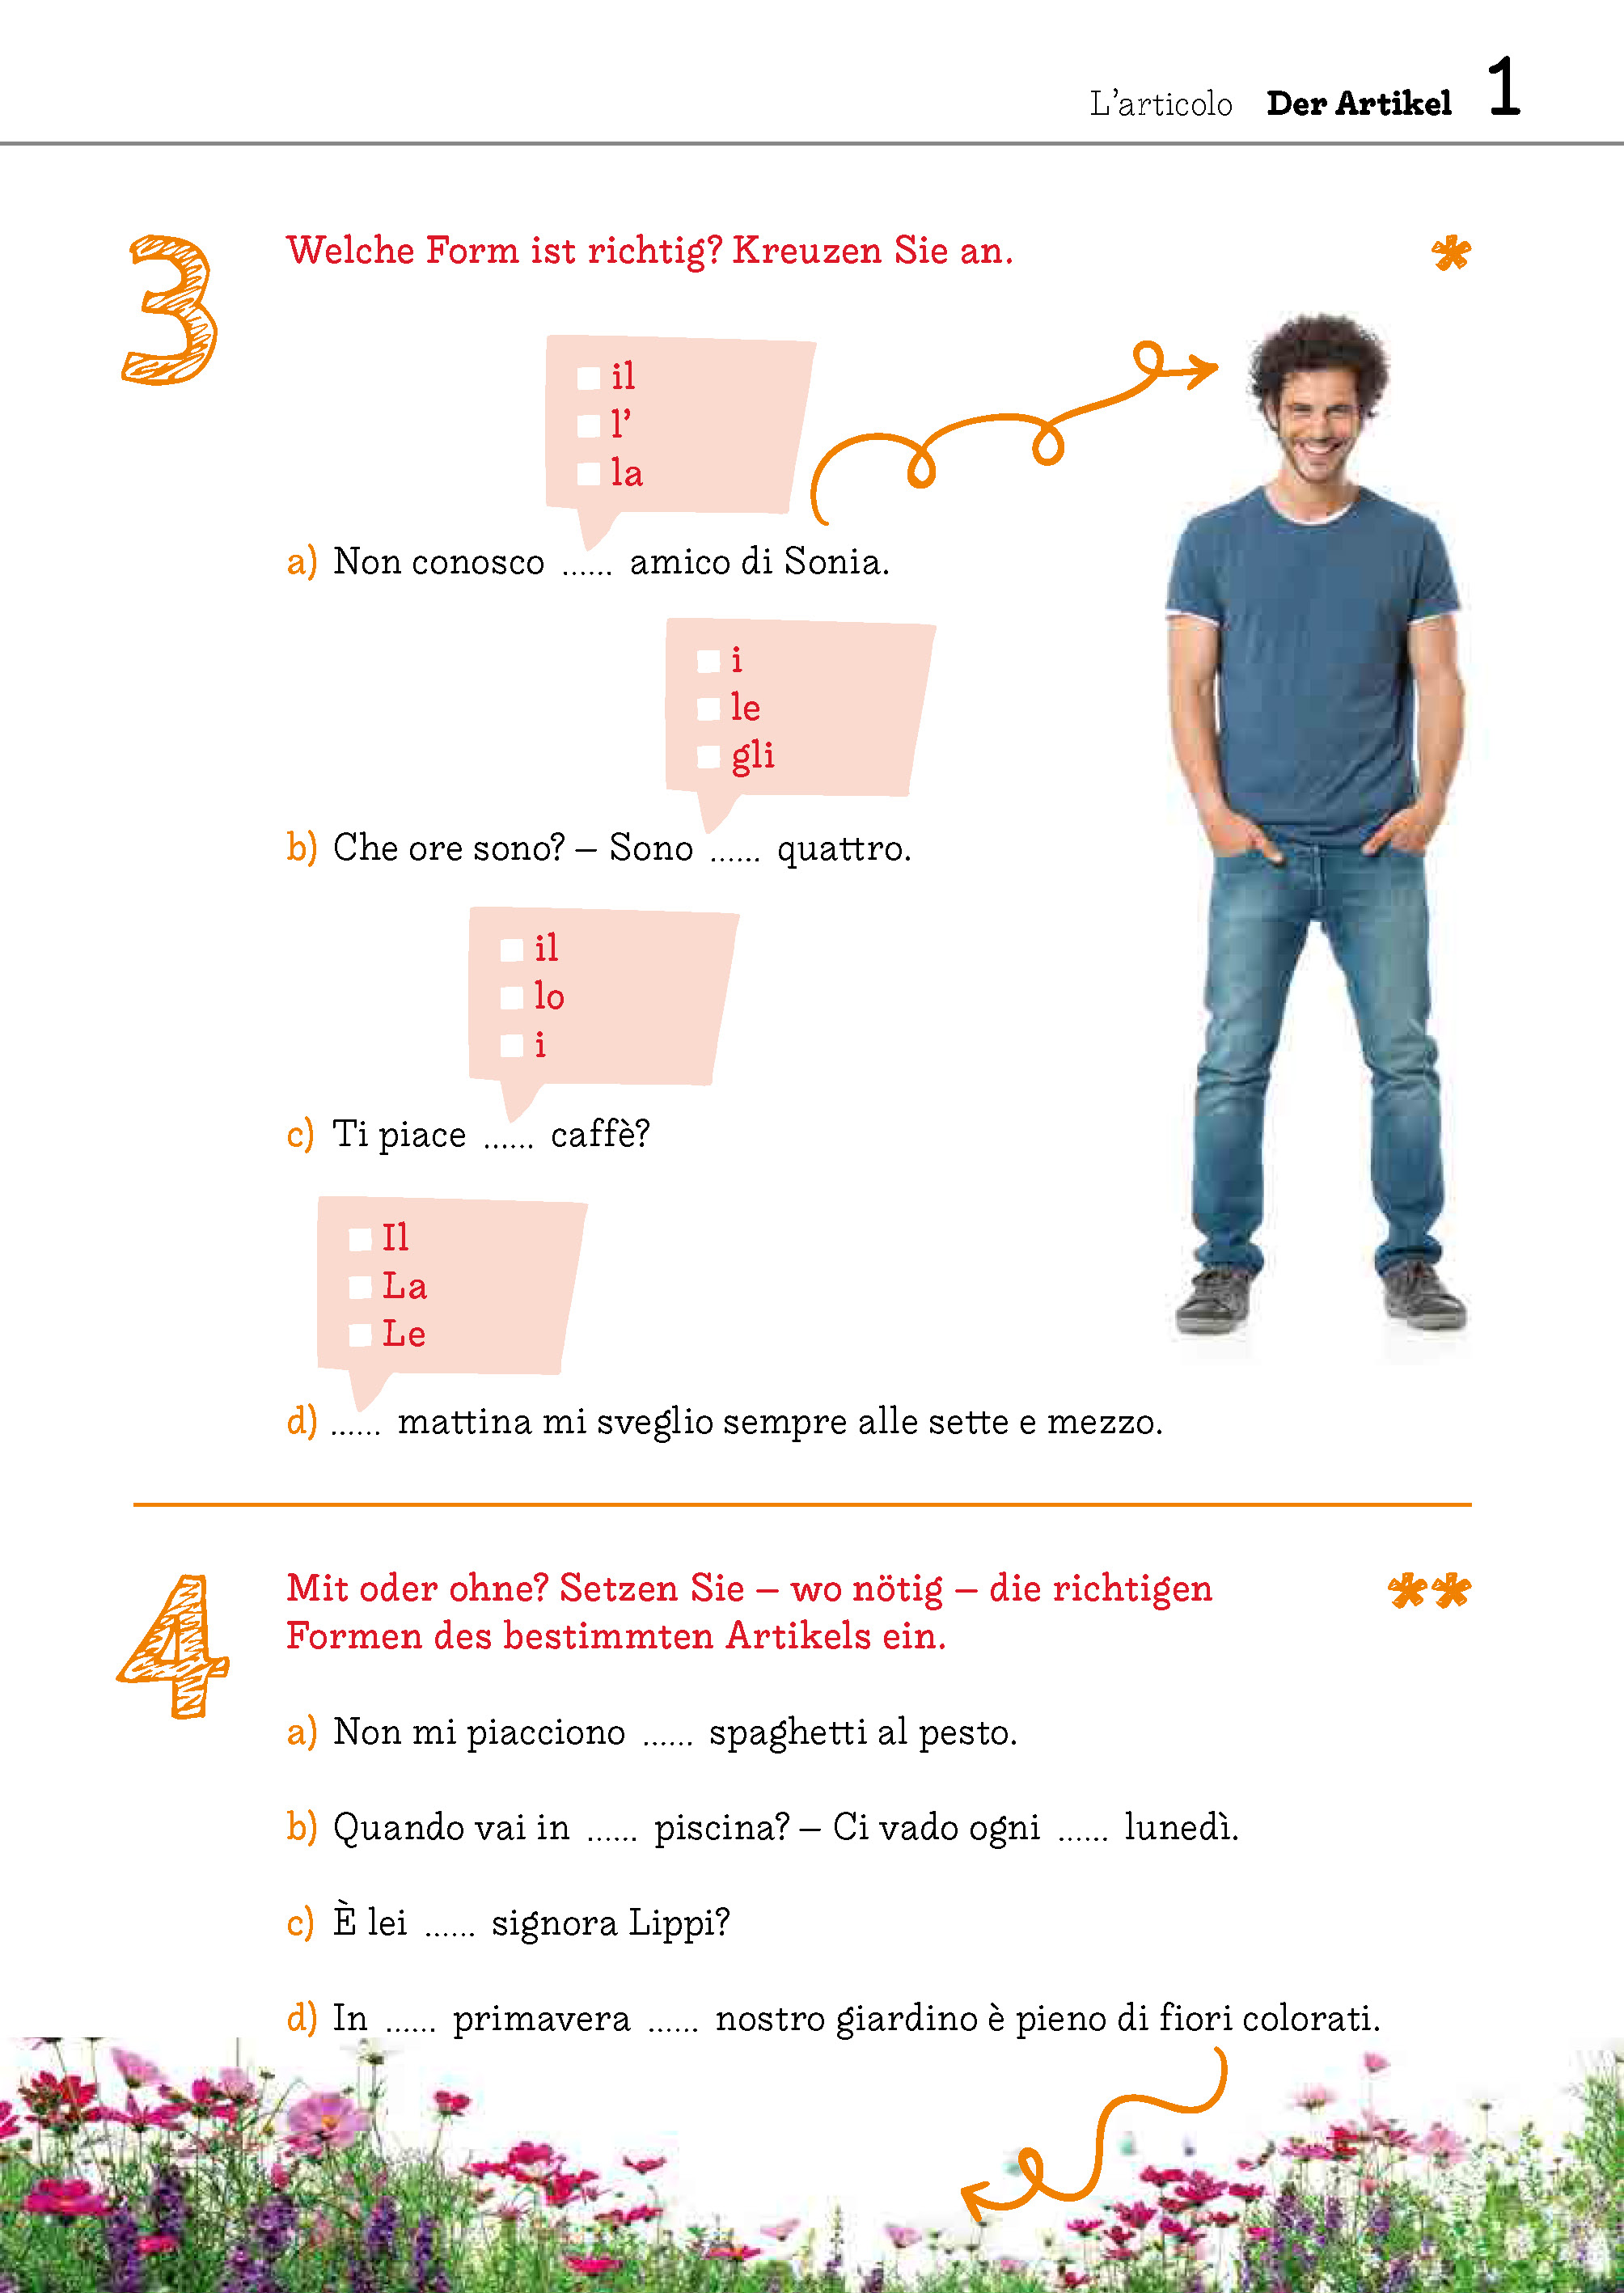 Langenscheidt Übungsbuch Grammatik Bild für Bild Italienisch